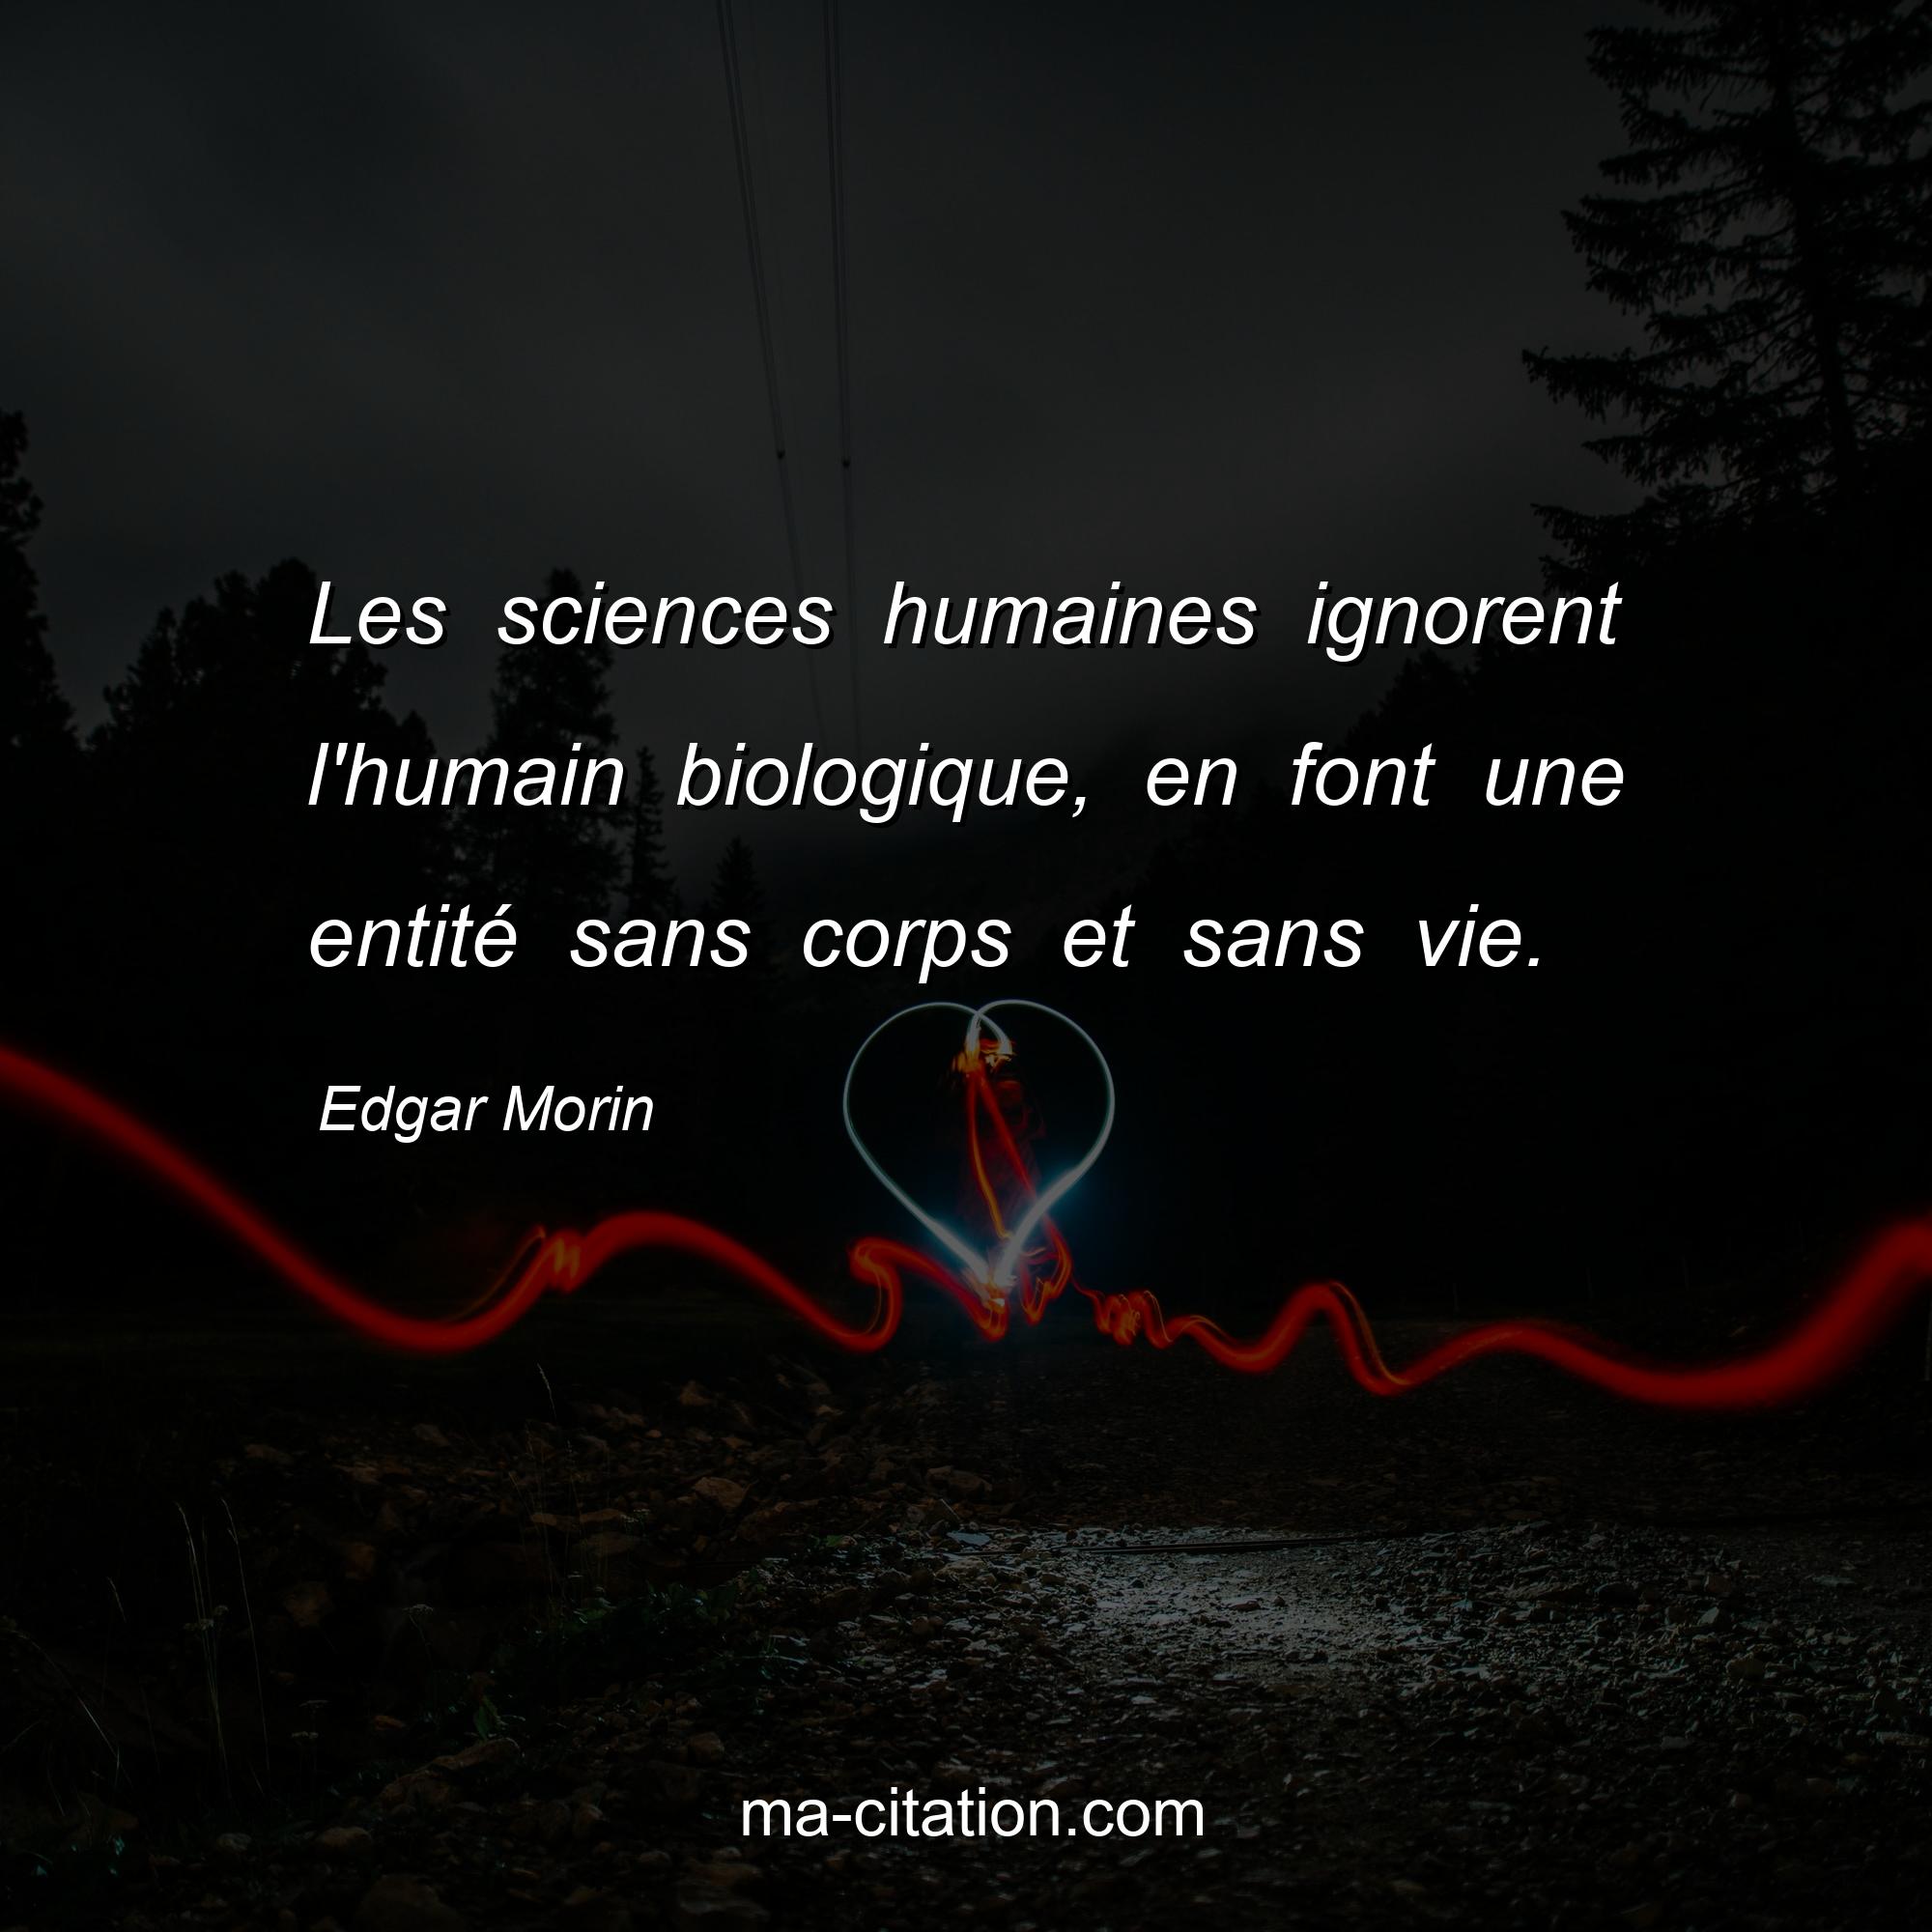 Edgar Morin : Les sciences humaines ignorent l'humain biologique, en font une entité sans corps et sans vie.